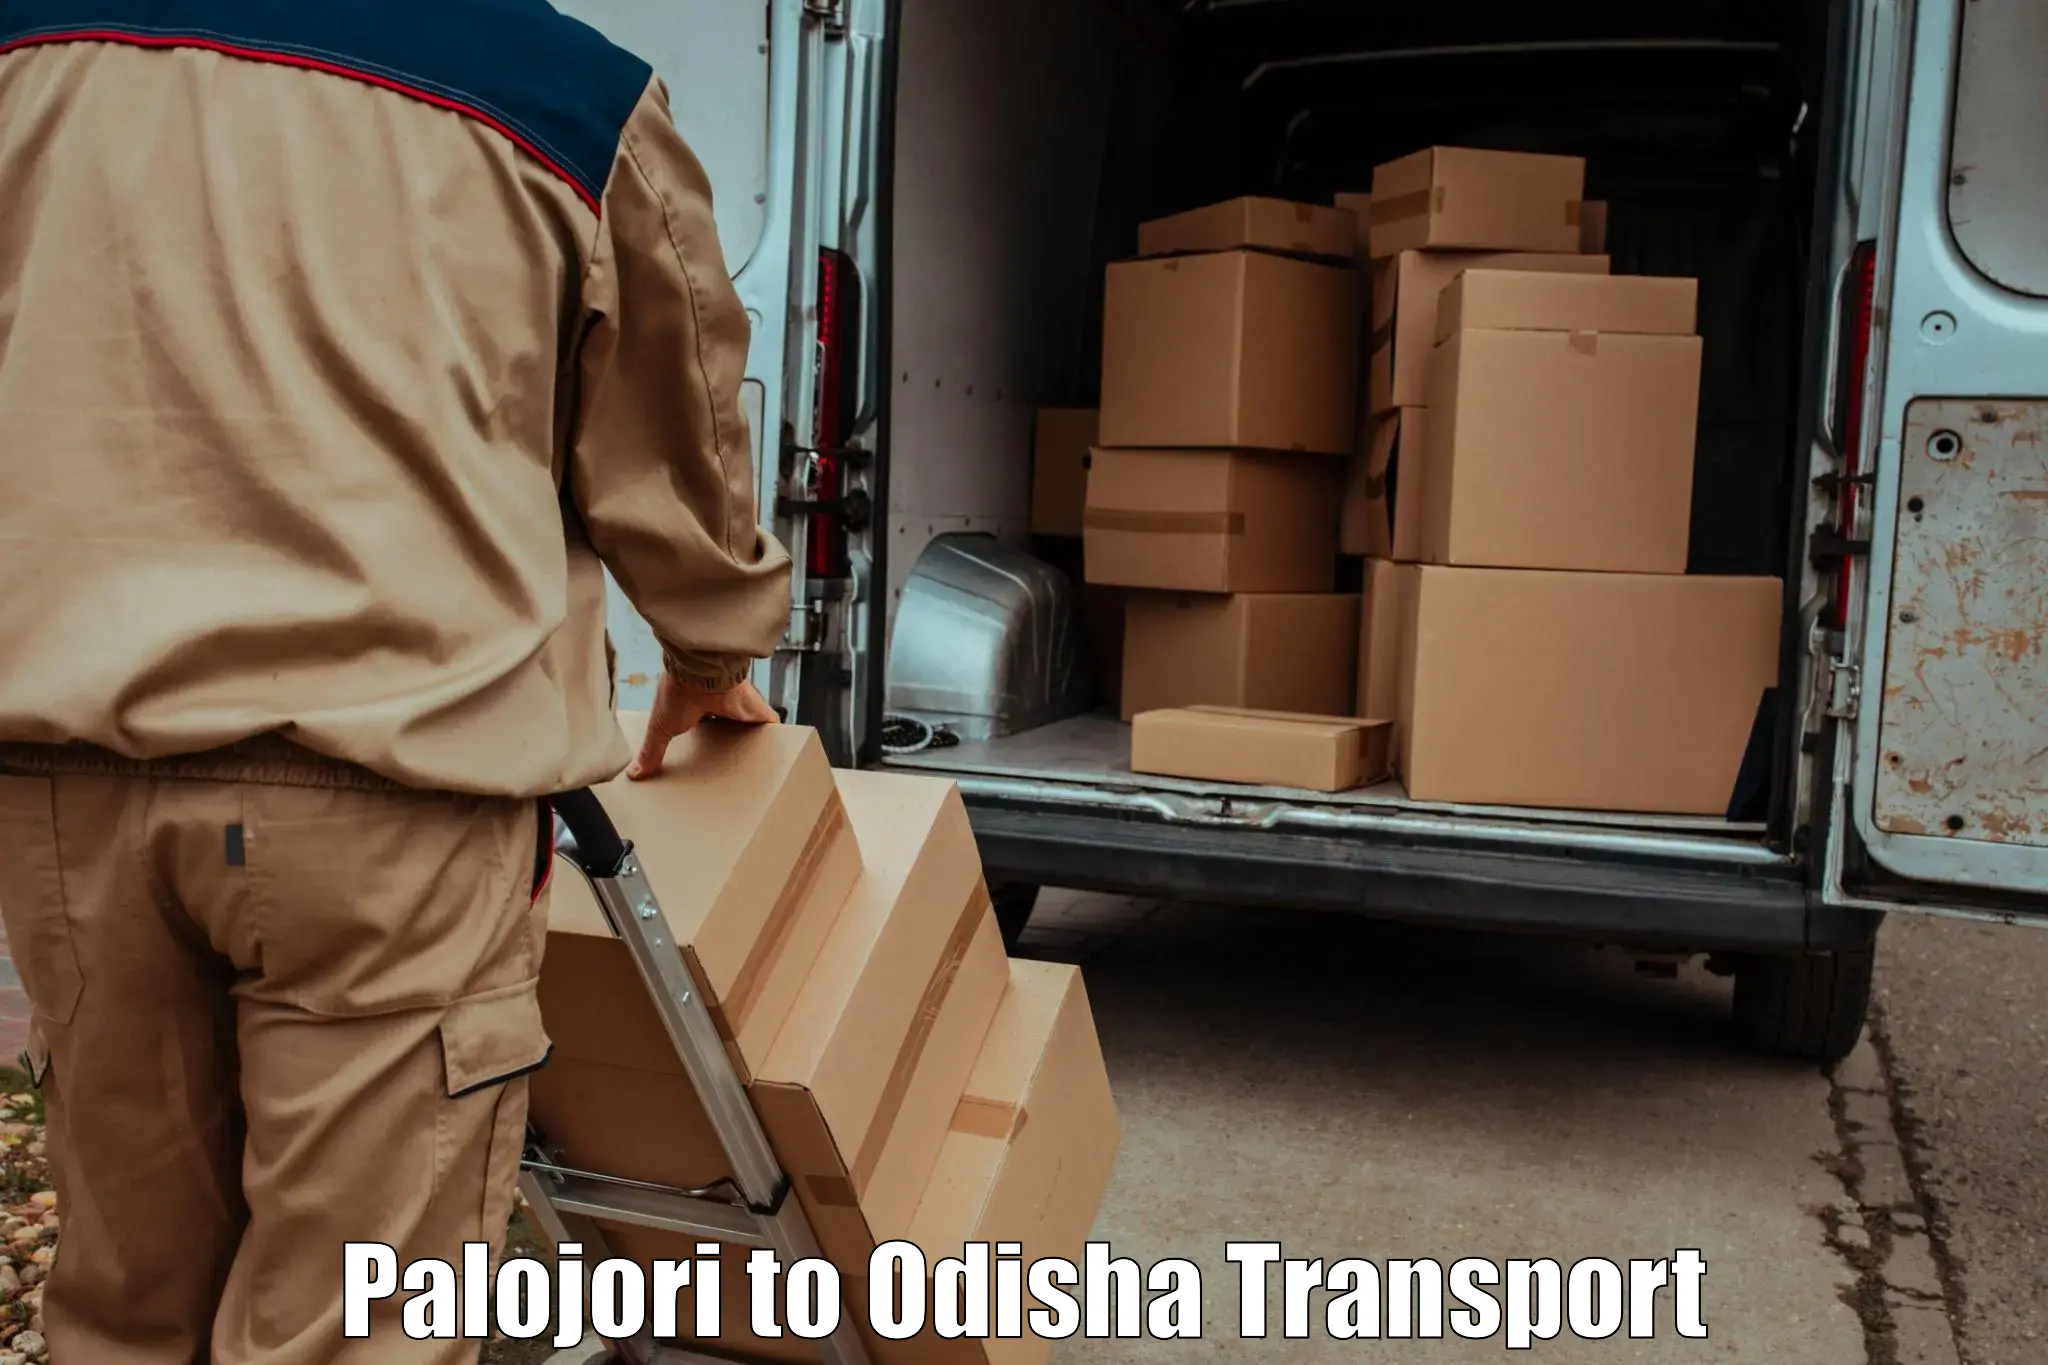 Furniture transport service Palojori to Odisha